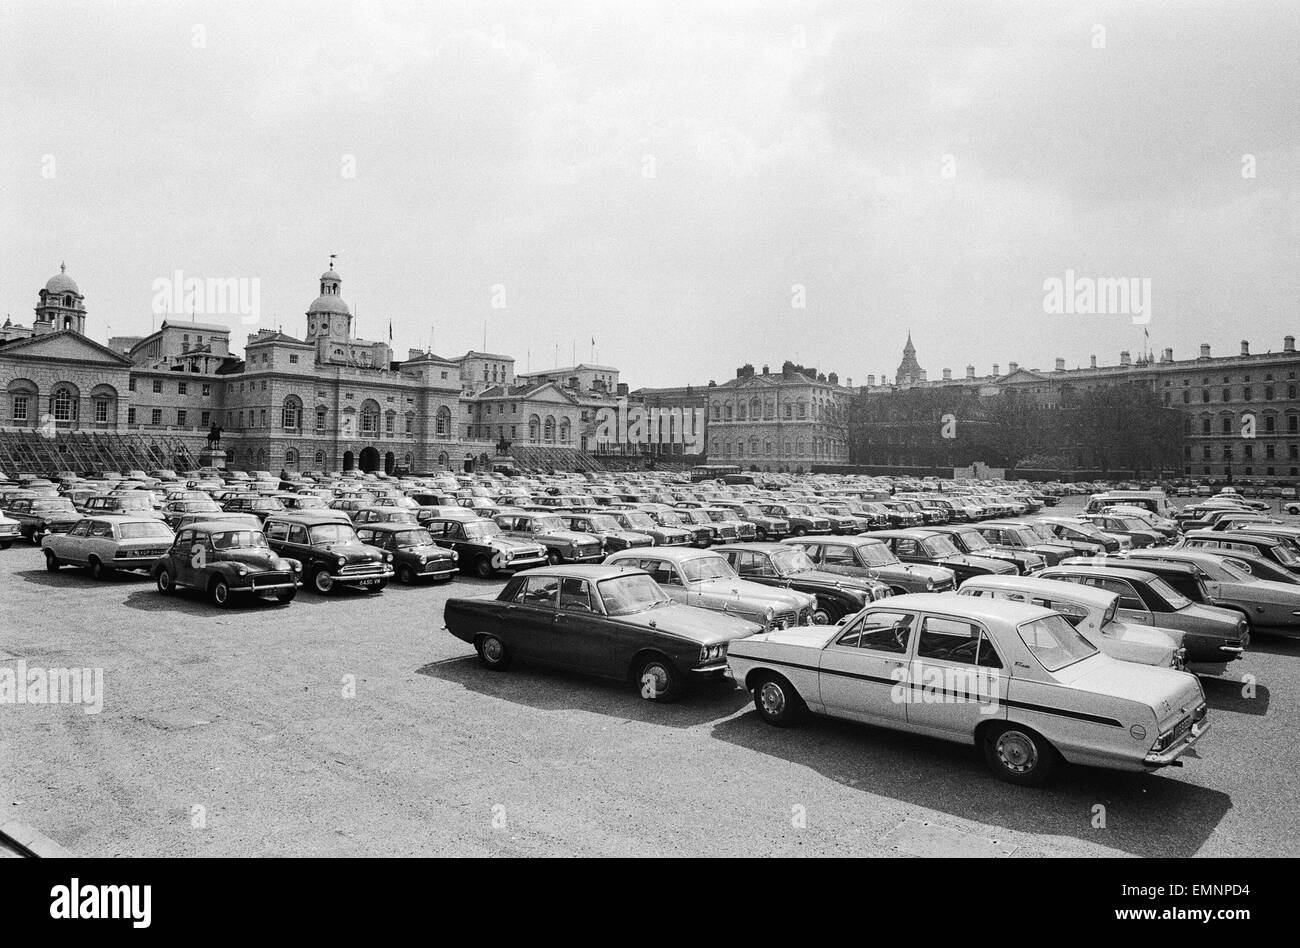 Un parking d'urgence mis en place dans la région de Horse Guards Parade, le centre de Londres pour accueillir le trop-plein de trafic de la ville. 17 avril 1972. Banque D'Images